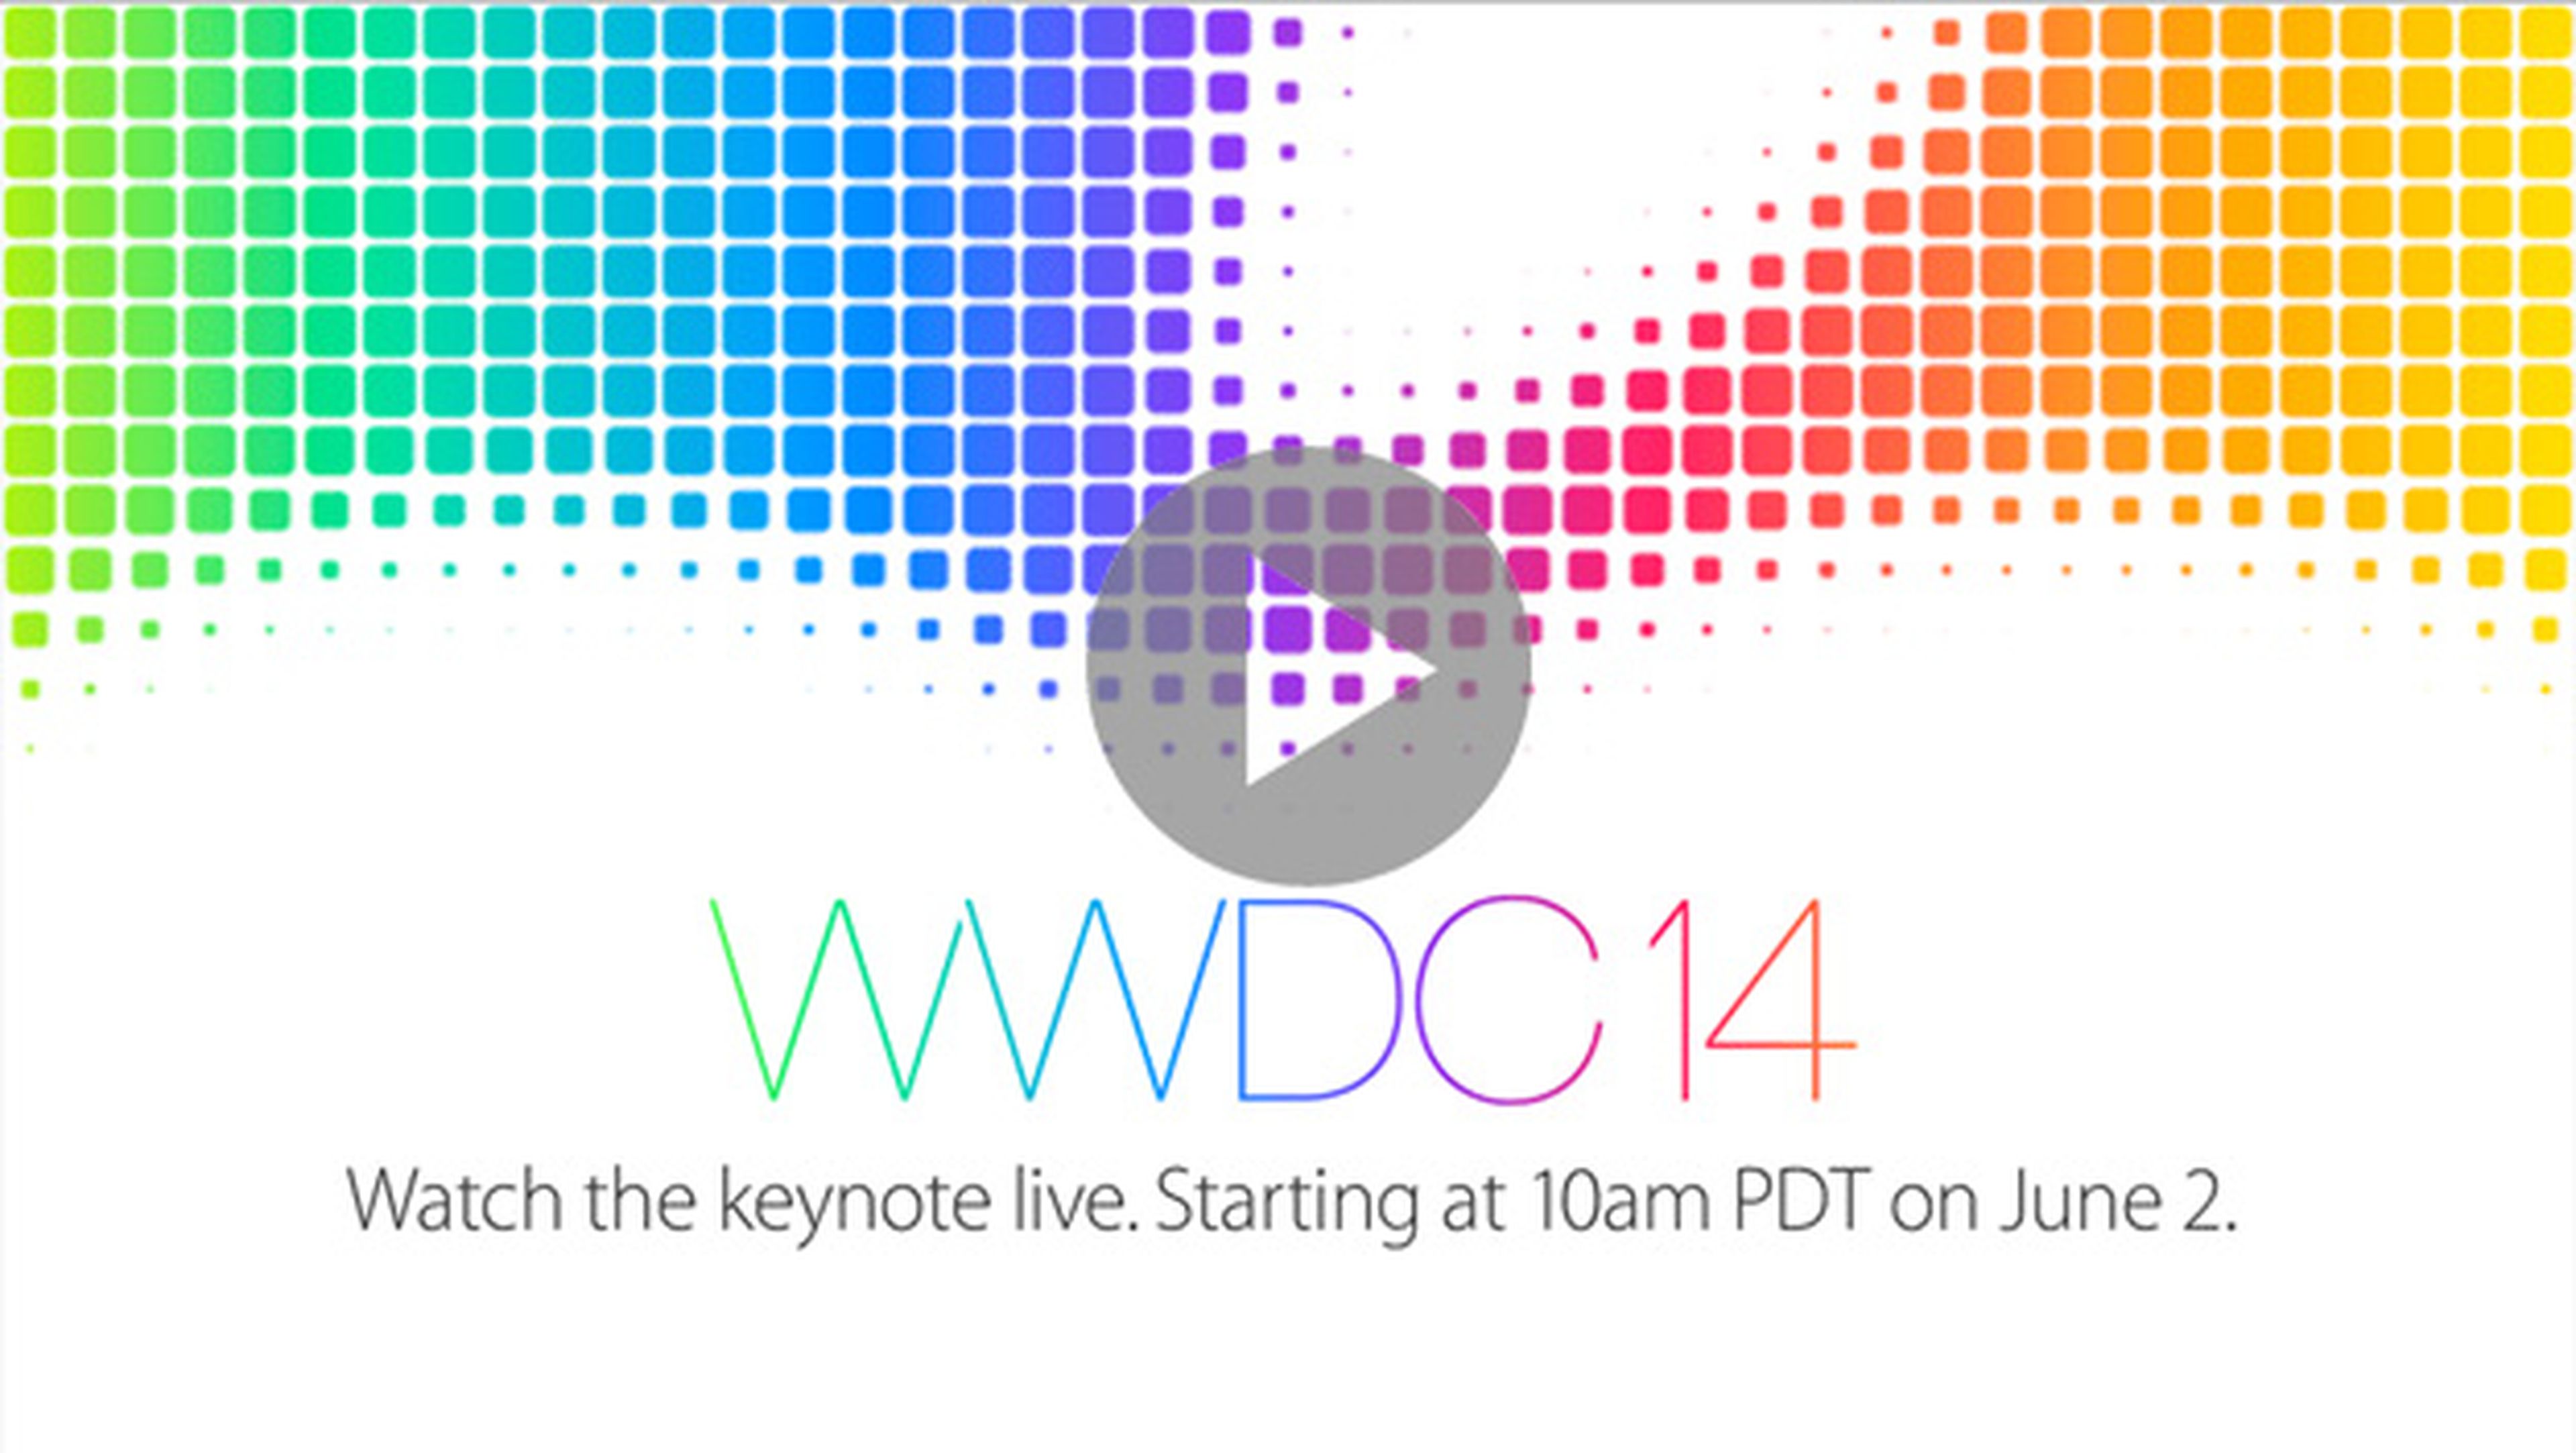 WWDC 2014: sigue online y en directo la Keynote de Apple